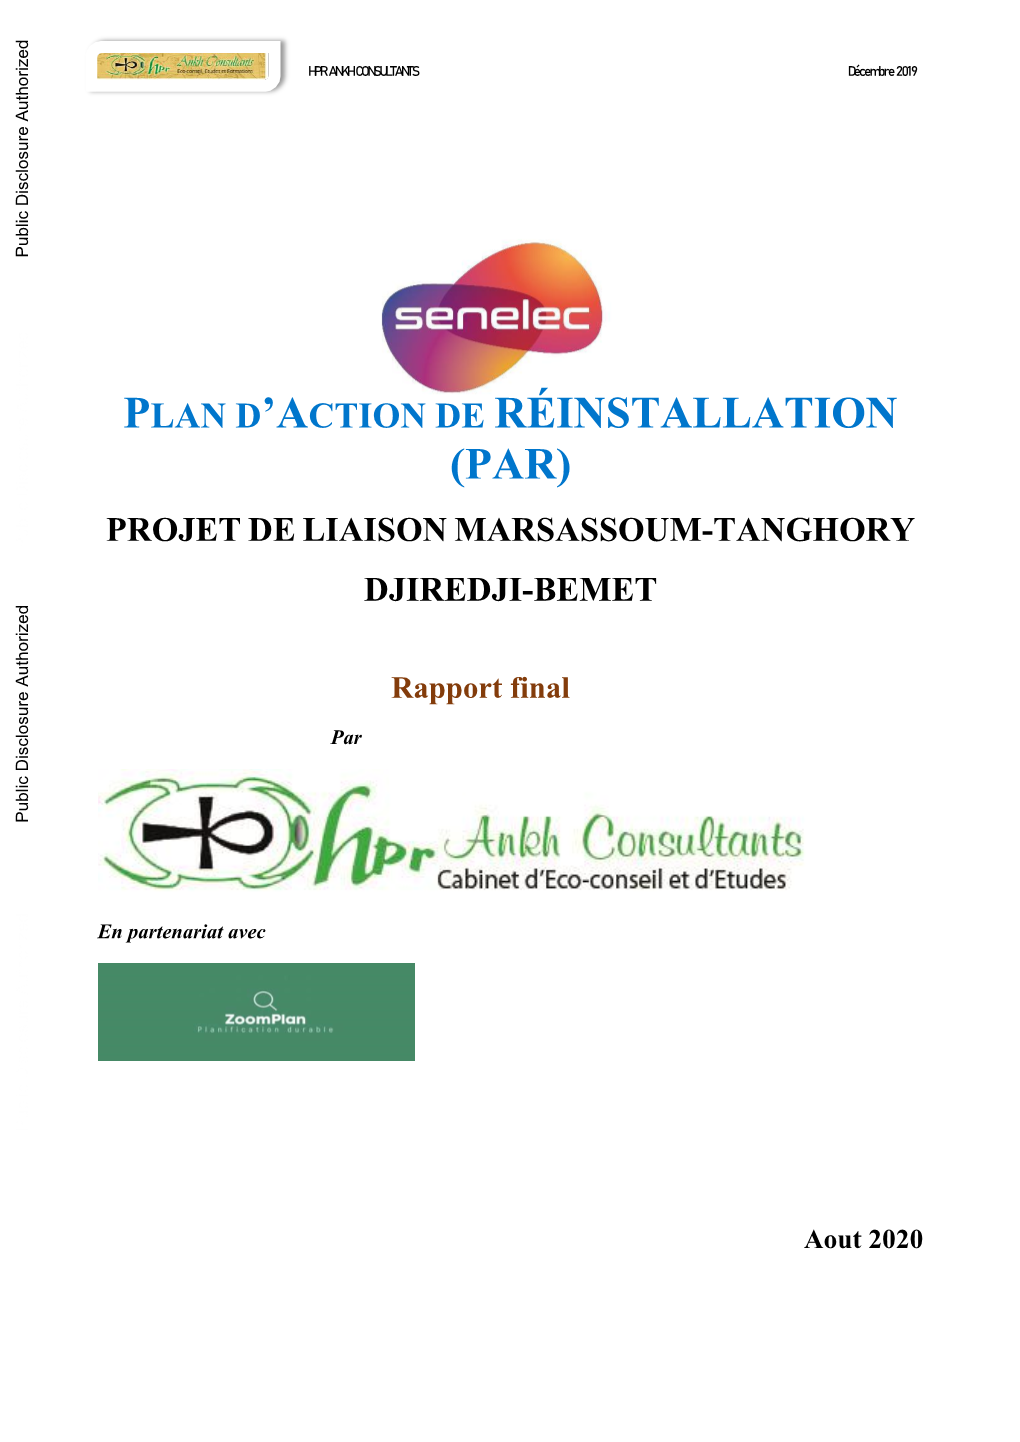 (Par) Projet De Liaison Marsassoum-Tanghory